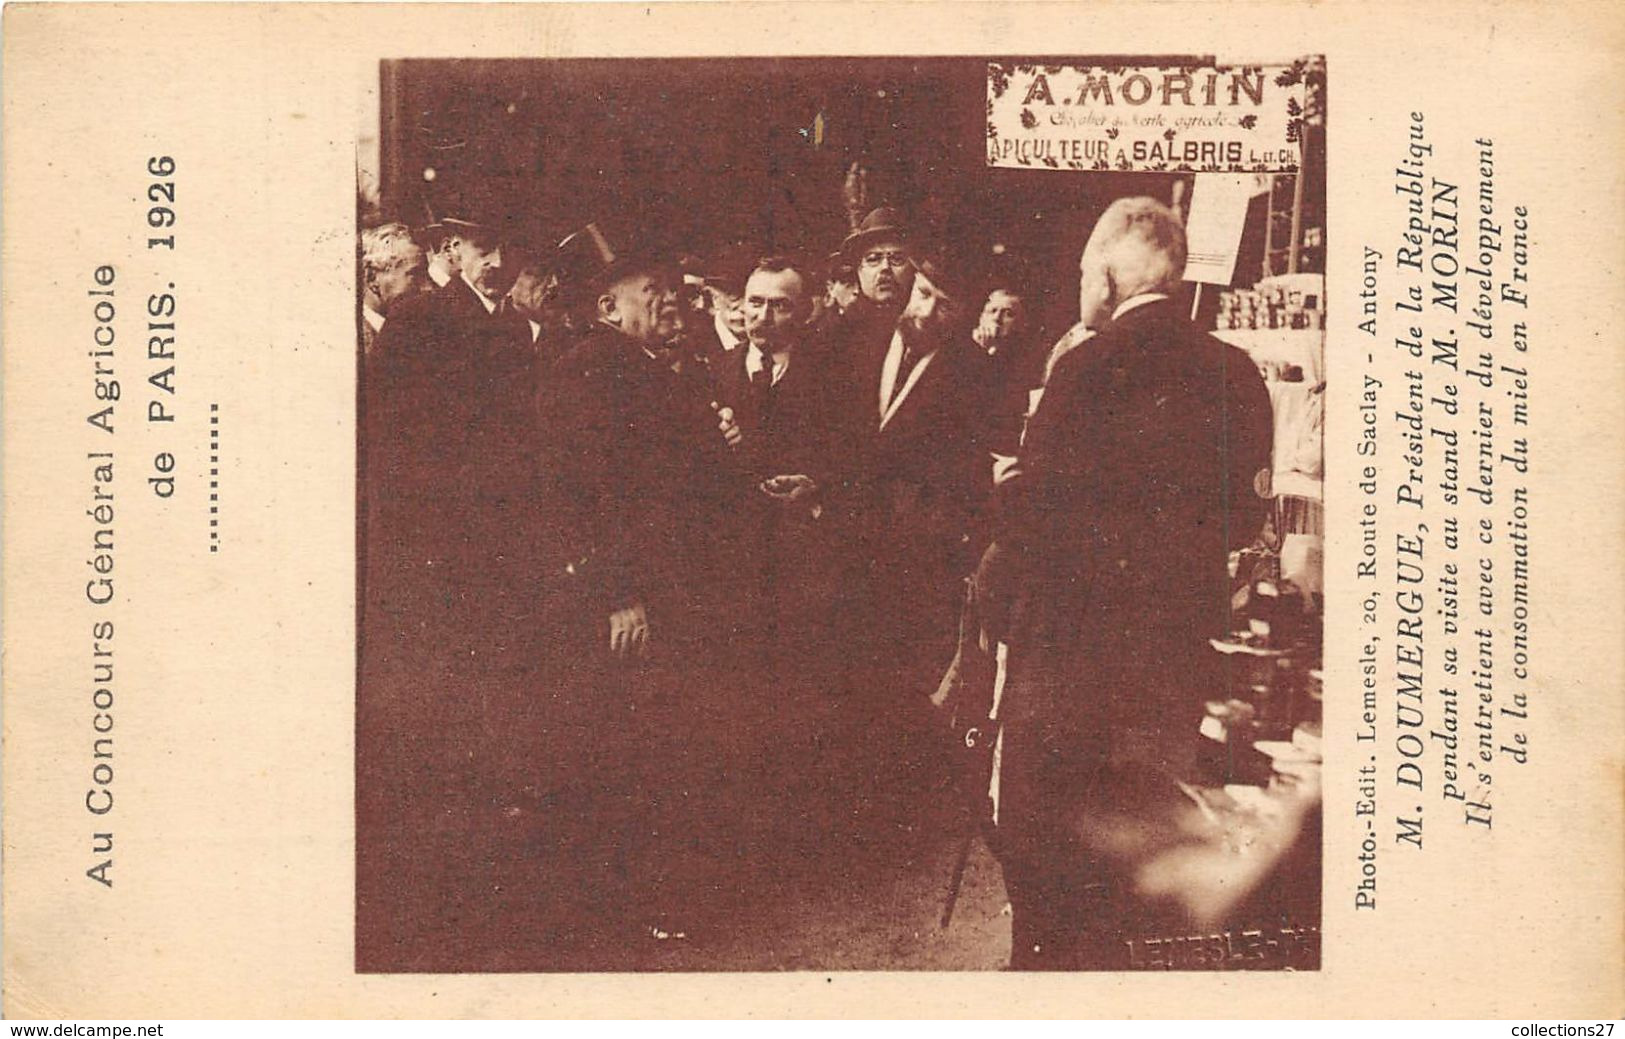 PARIS-AU ONCOURS GENERAL AGRICOLE 1926- M. DOUMERGUE AU STAND DE M. MORIN S'ENTRETIENT SUR LA CONSOMMATION DU MIEL EN FR - Exhibitions